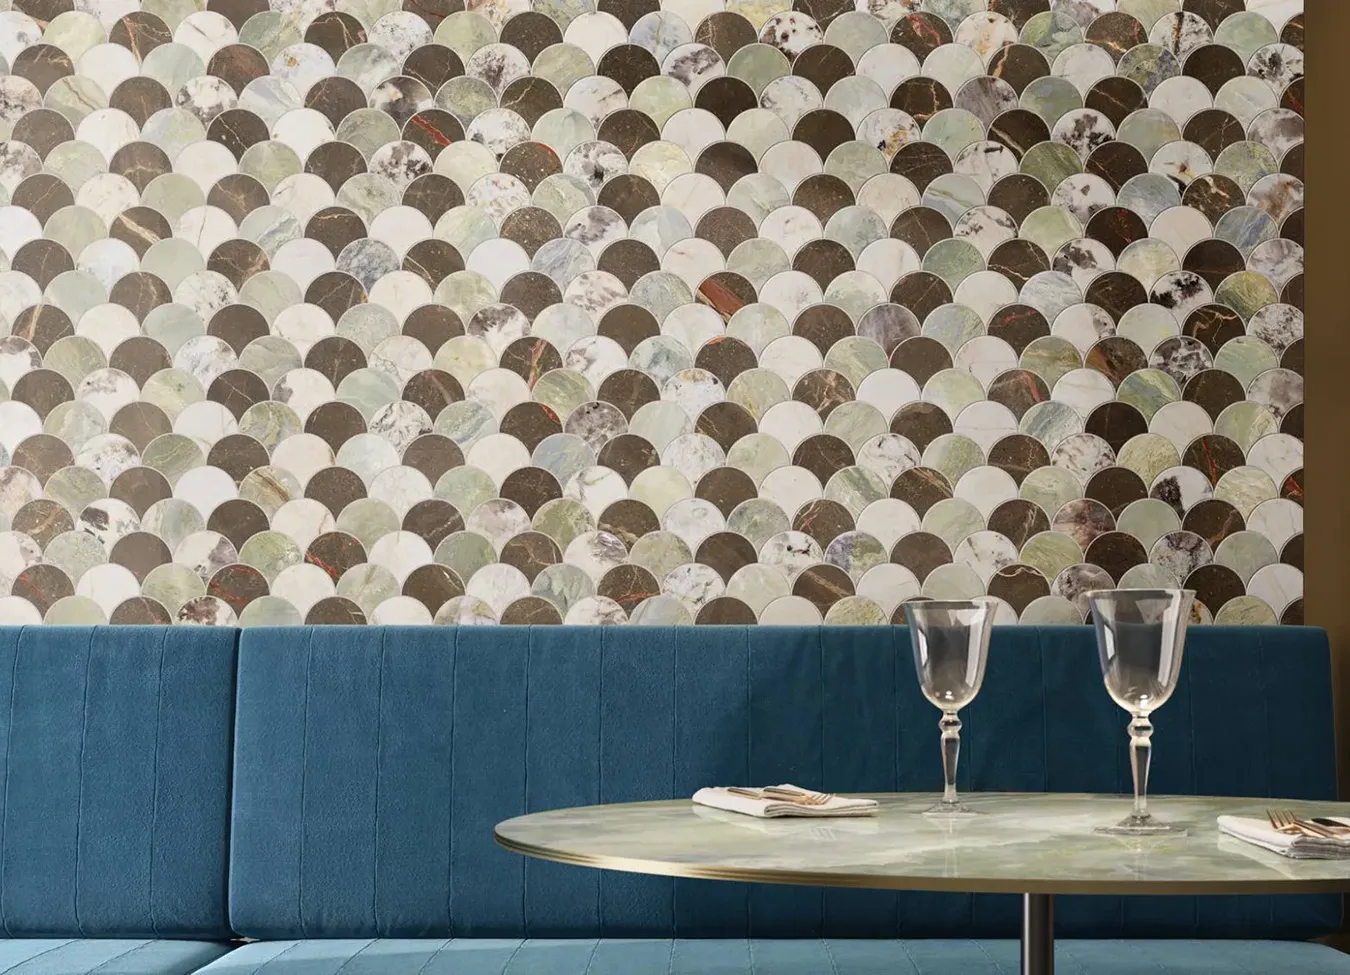 Parete in gres effetto marmo con design a mosaico dalla collezione 9cento in un ambiente ristorante chic.